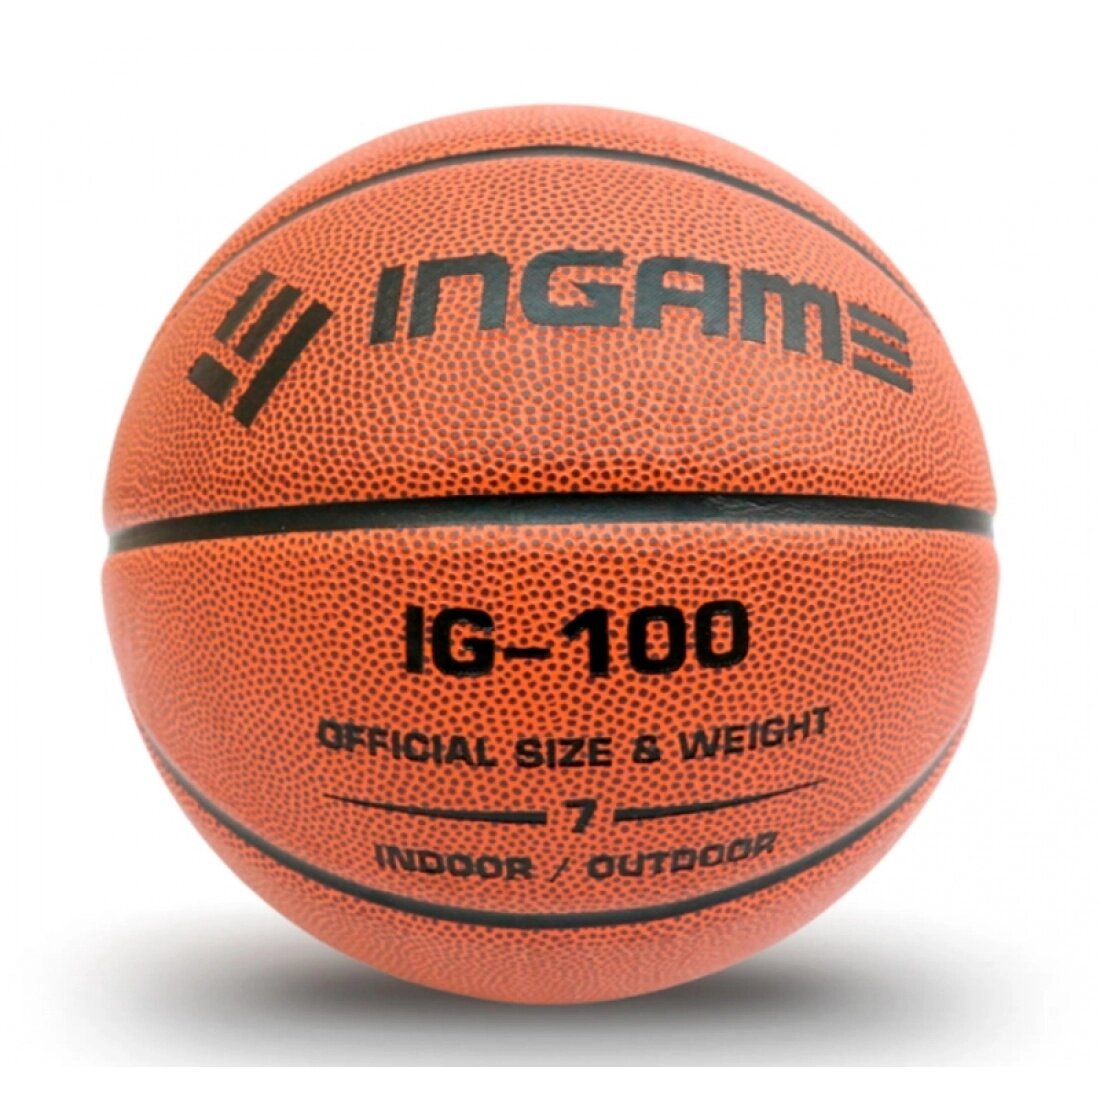 Мяч баскетбольный Ingame IG-100 р.7